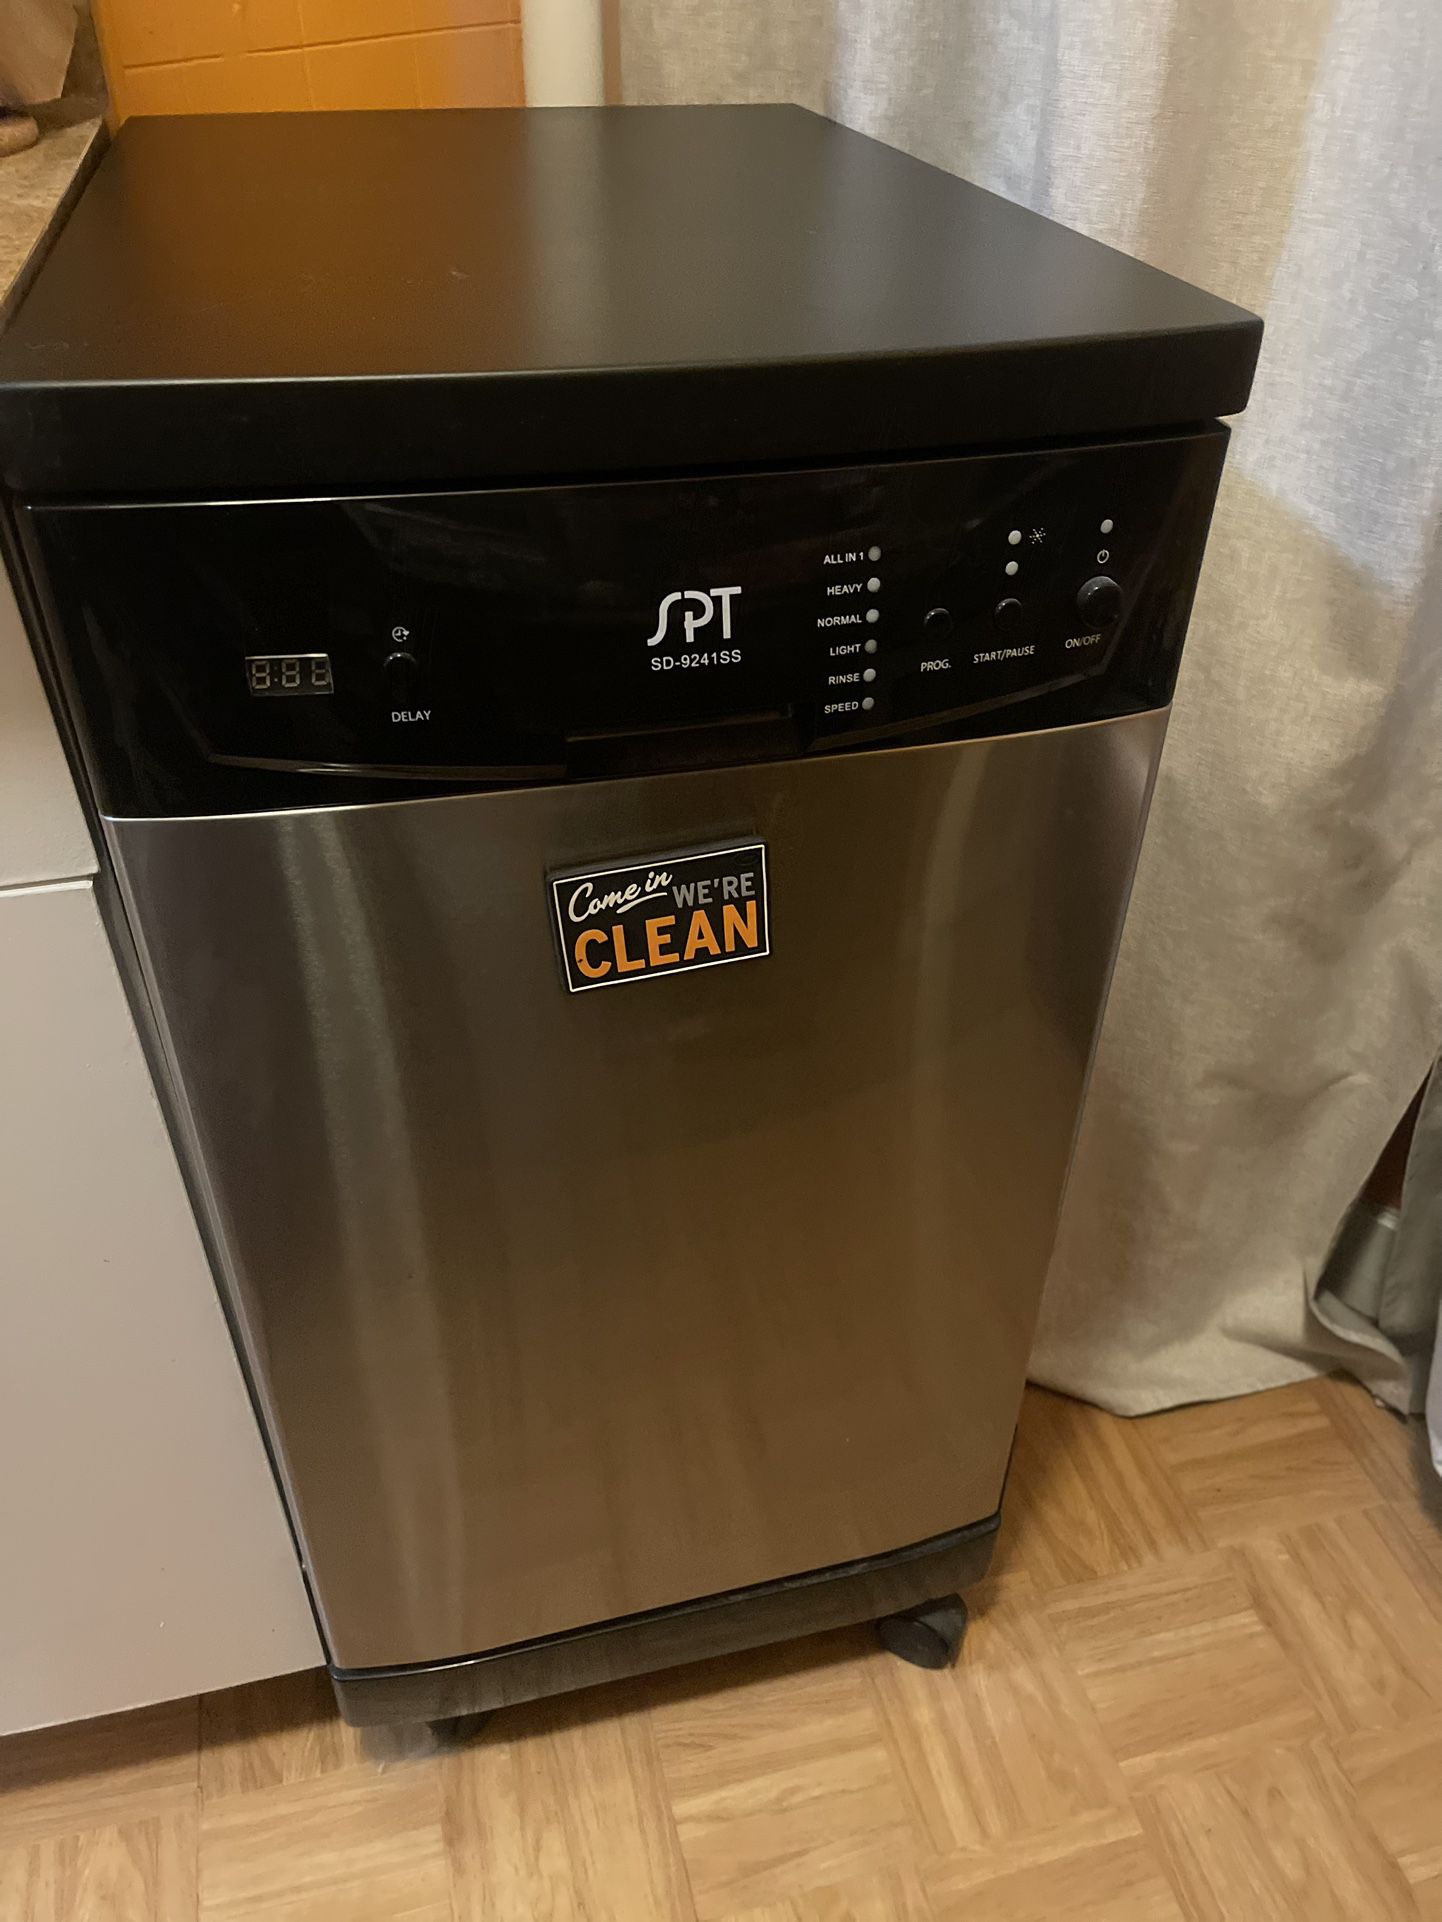 Portable dishwasher - like new